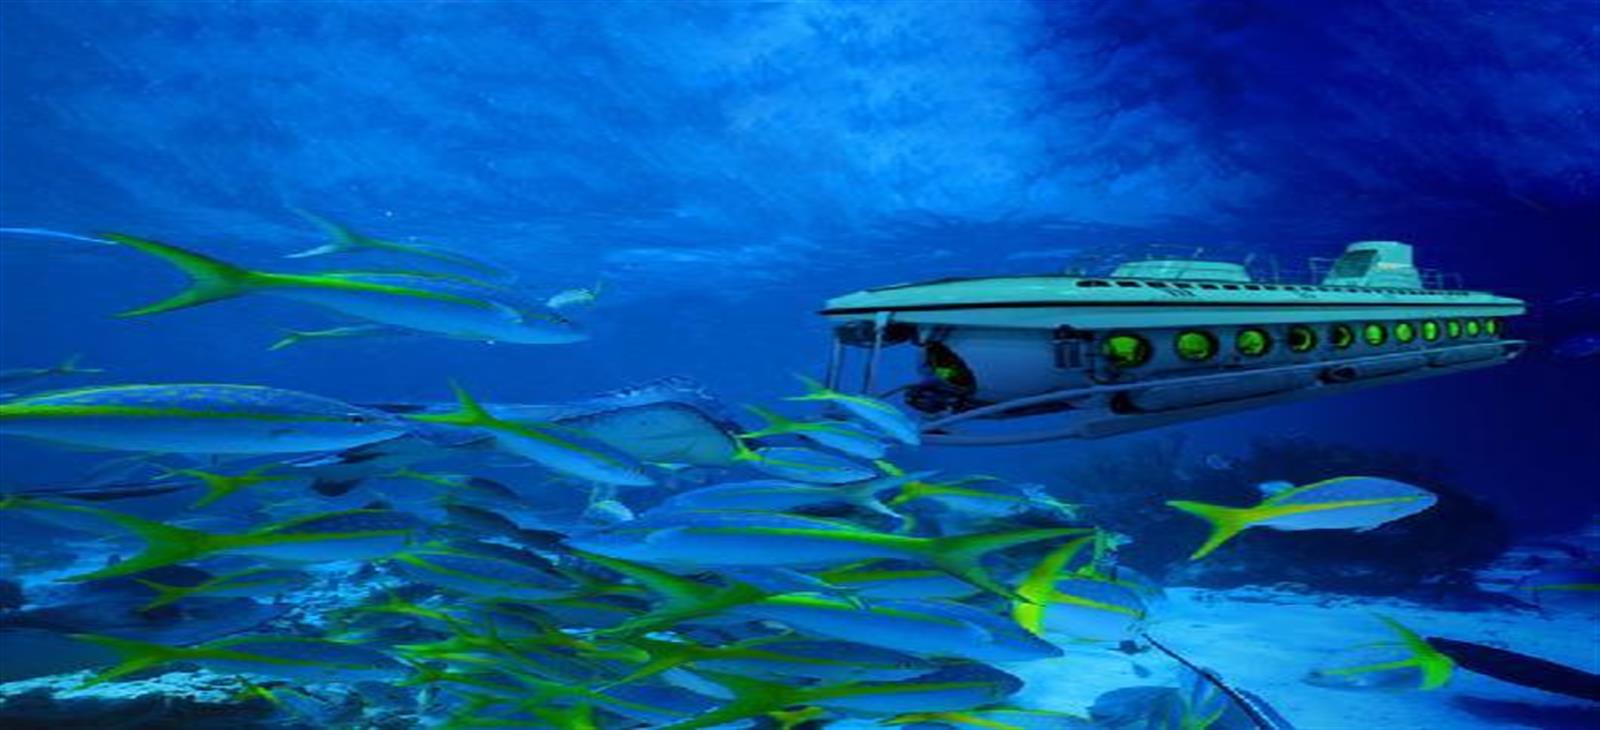 Hurghada Submarine